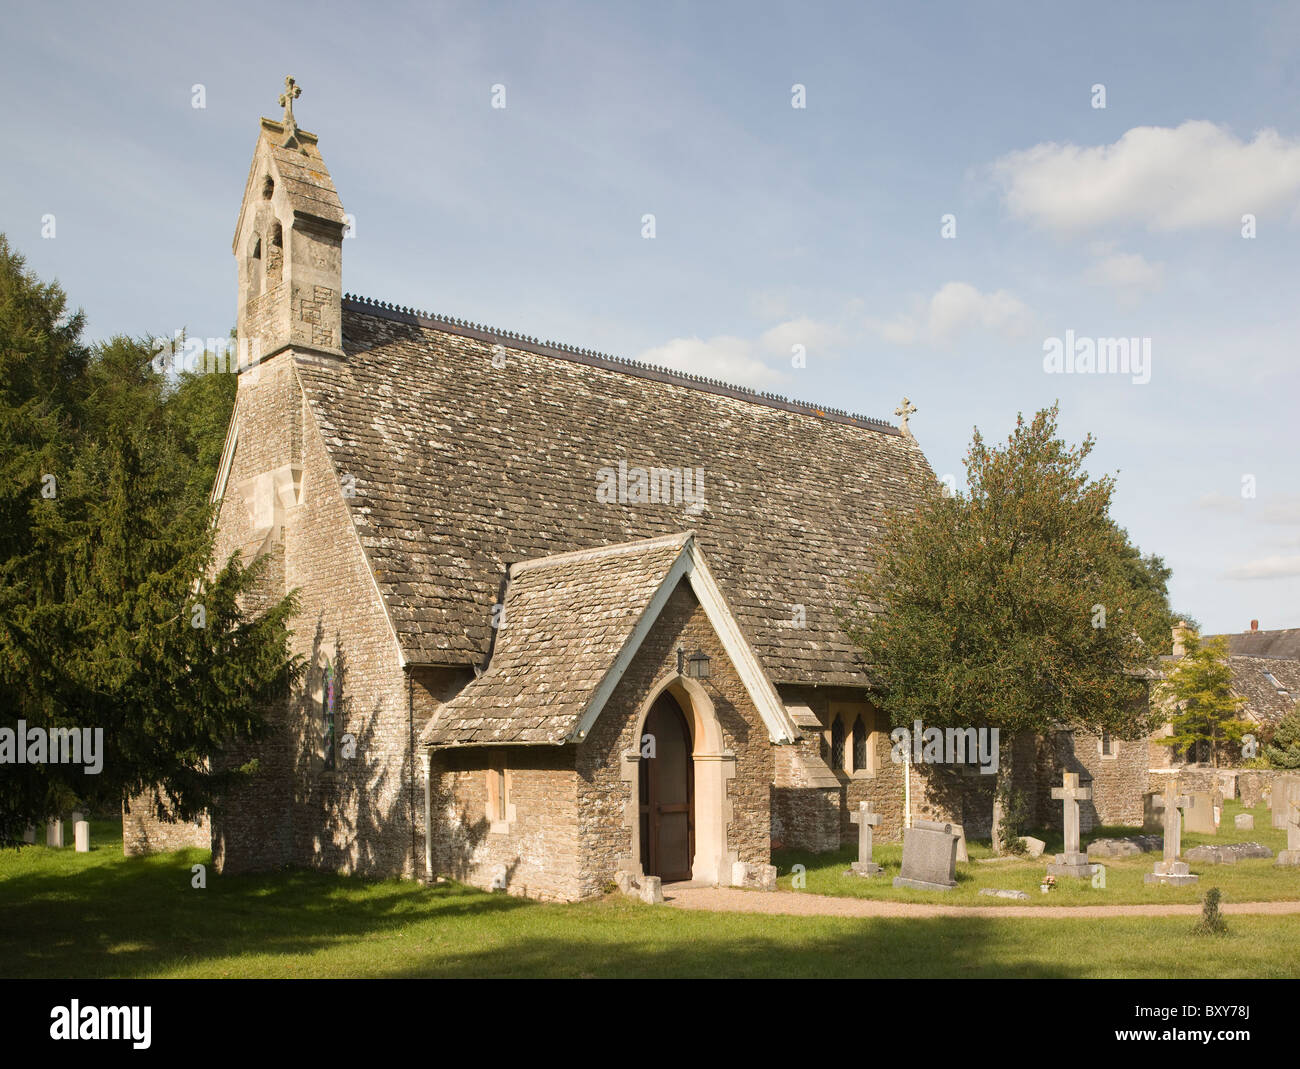 St Lawrence Tubney, Oxfordshire. Stock Photo